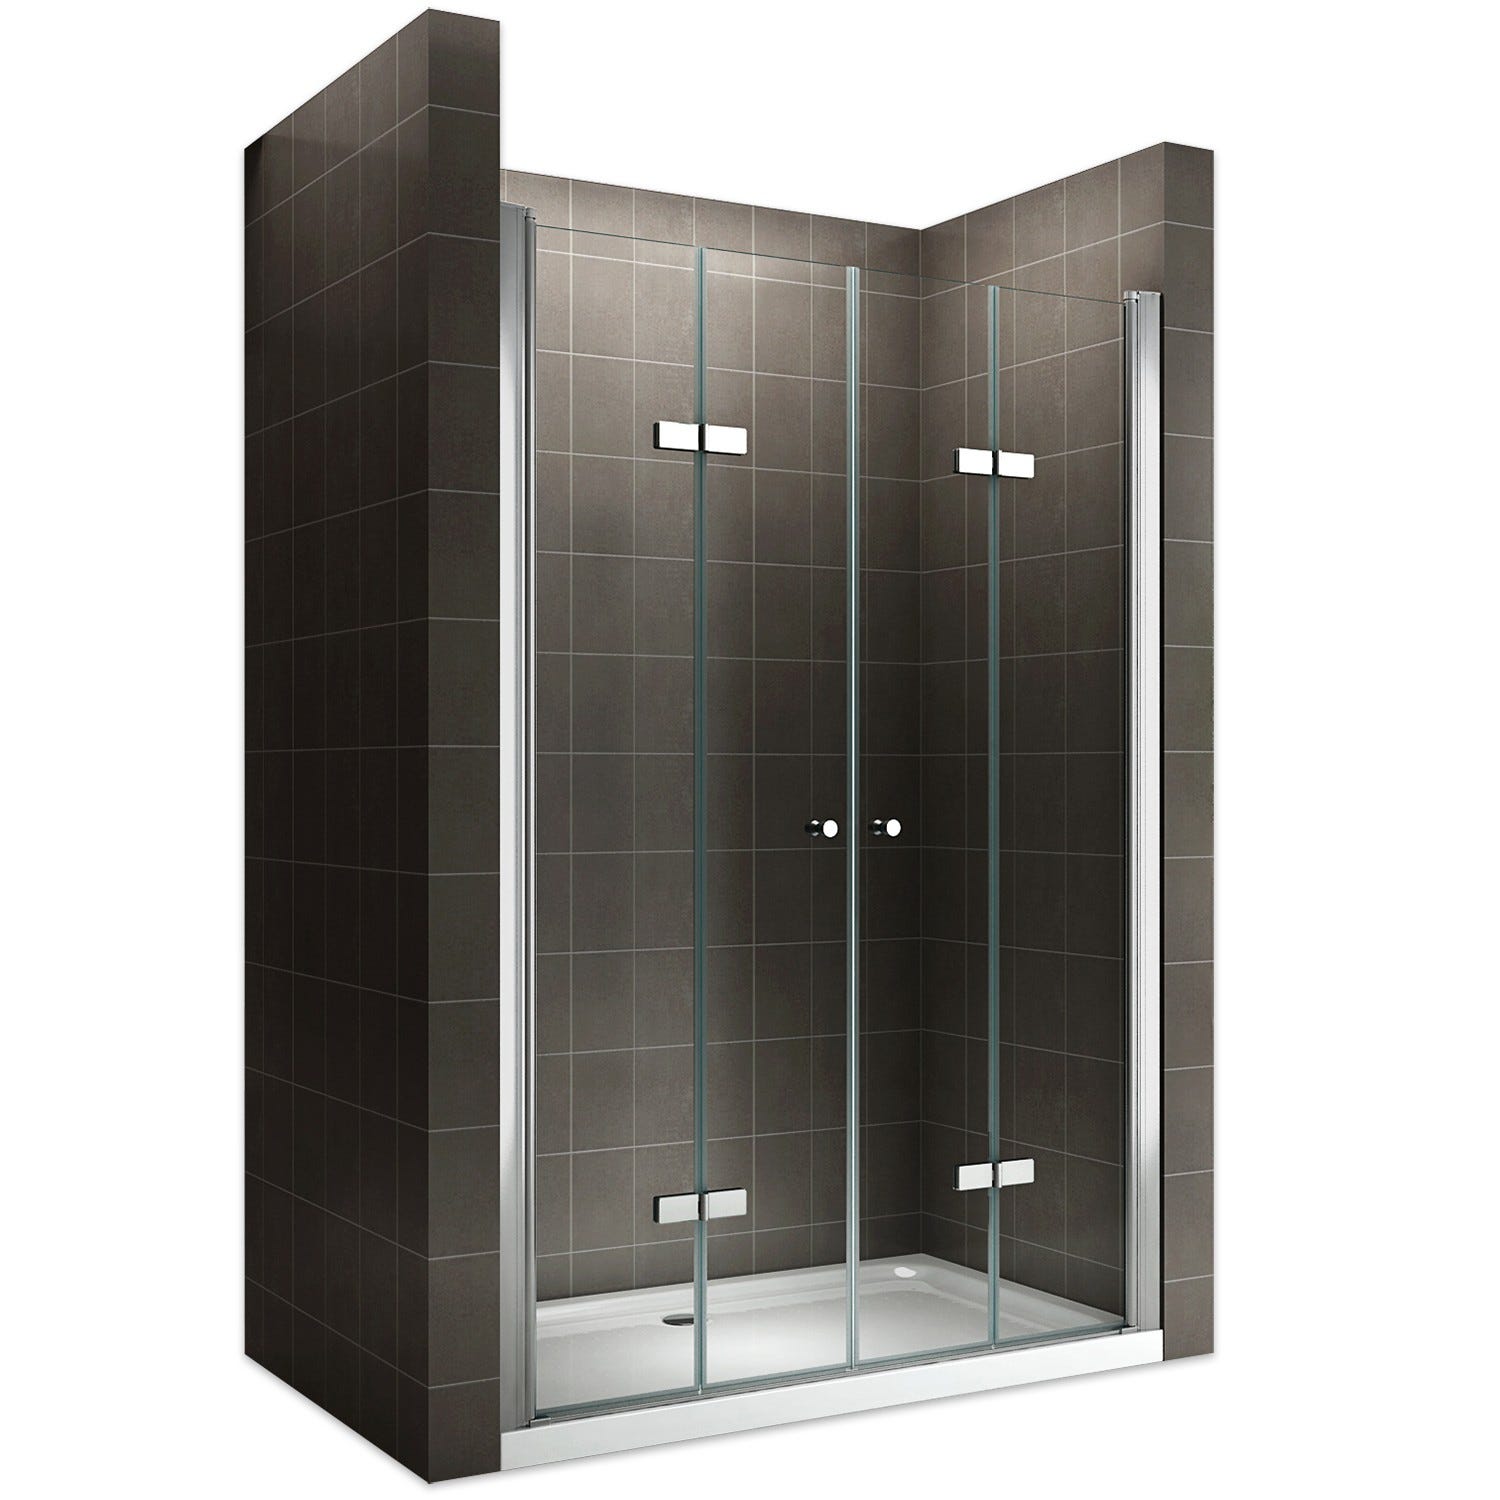 EMMY Porte de douche pliante pivotante H 185 cm largeur réglable 68 à 72 cm verre transparent 0